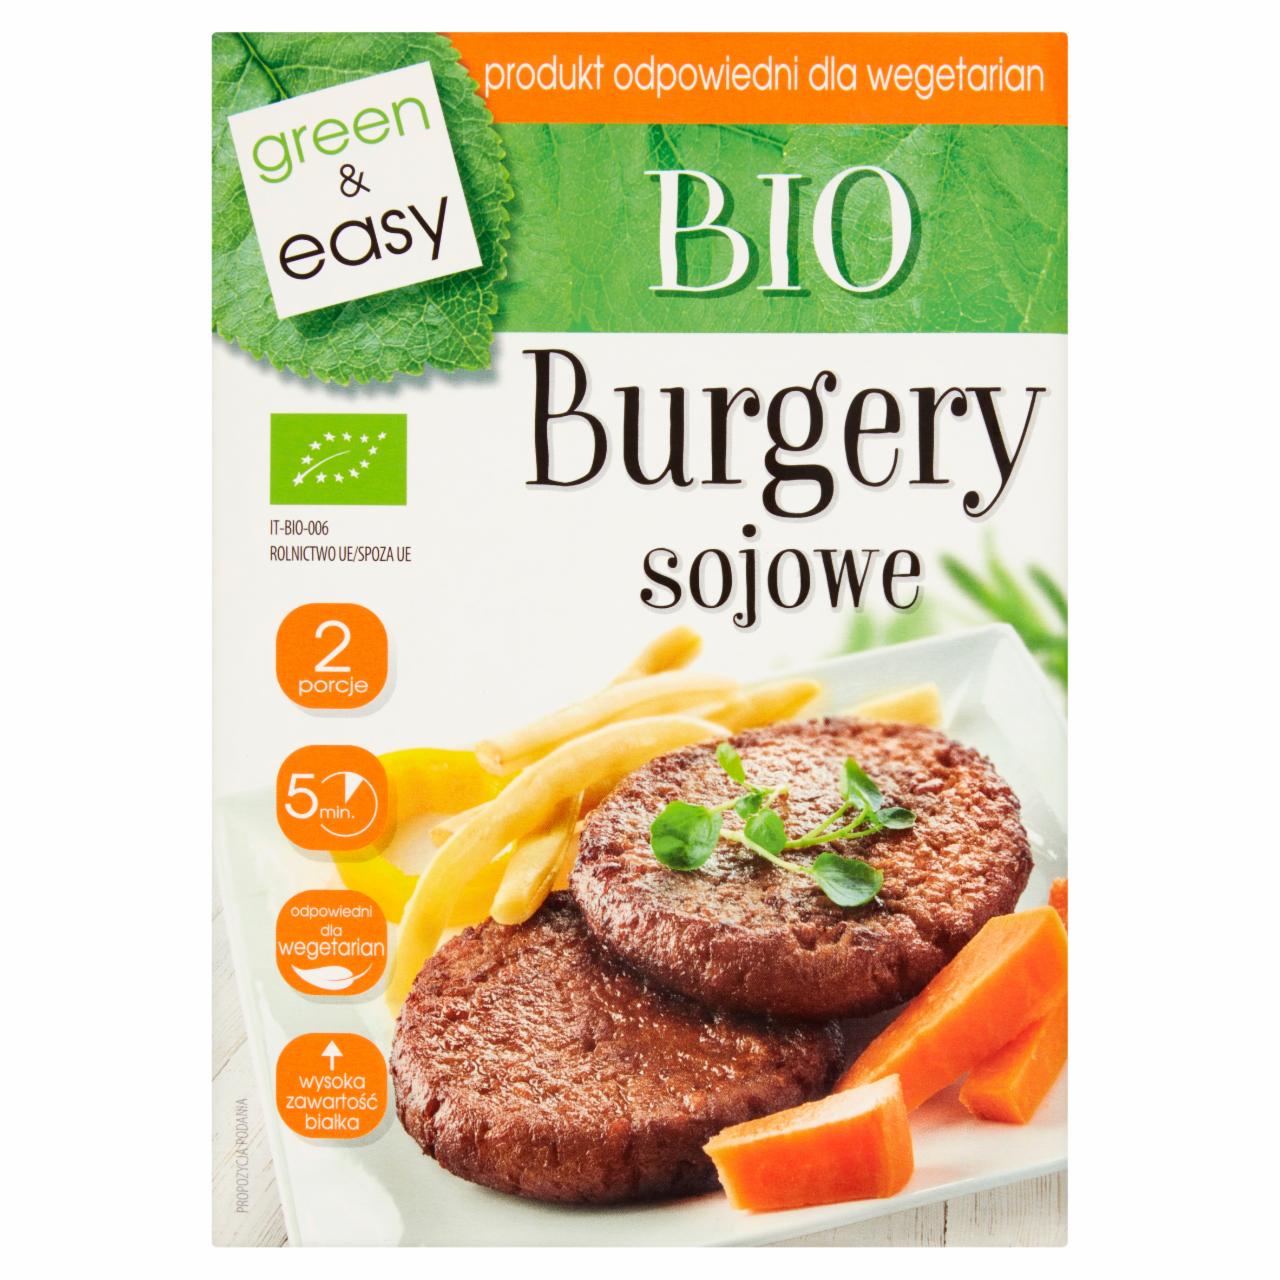 Zdjęcia - Bio burgery sojowe 160 g (2 x 80 g)